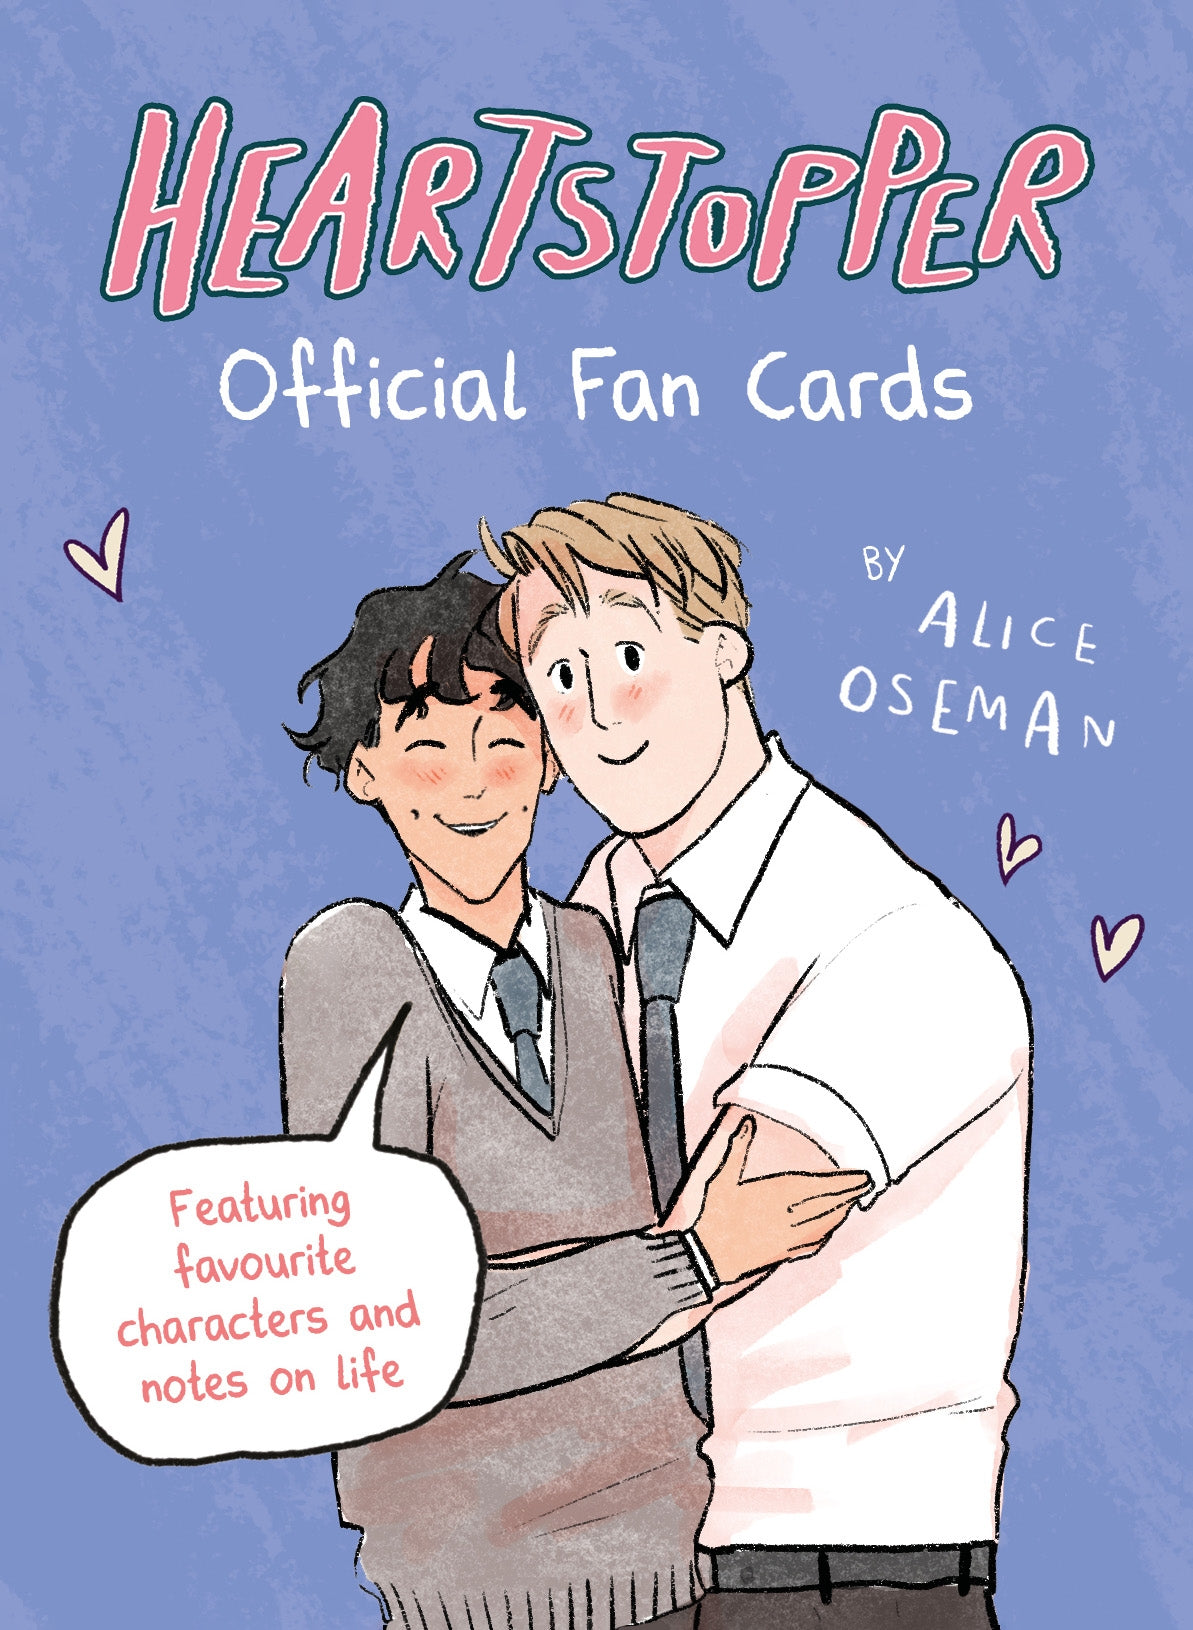 Heartstopper Official Fan Cards by Alice Oseman, Lauren James